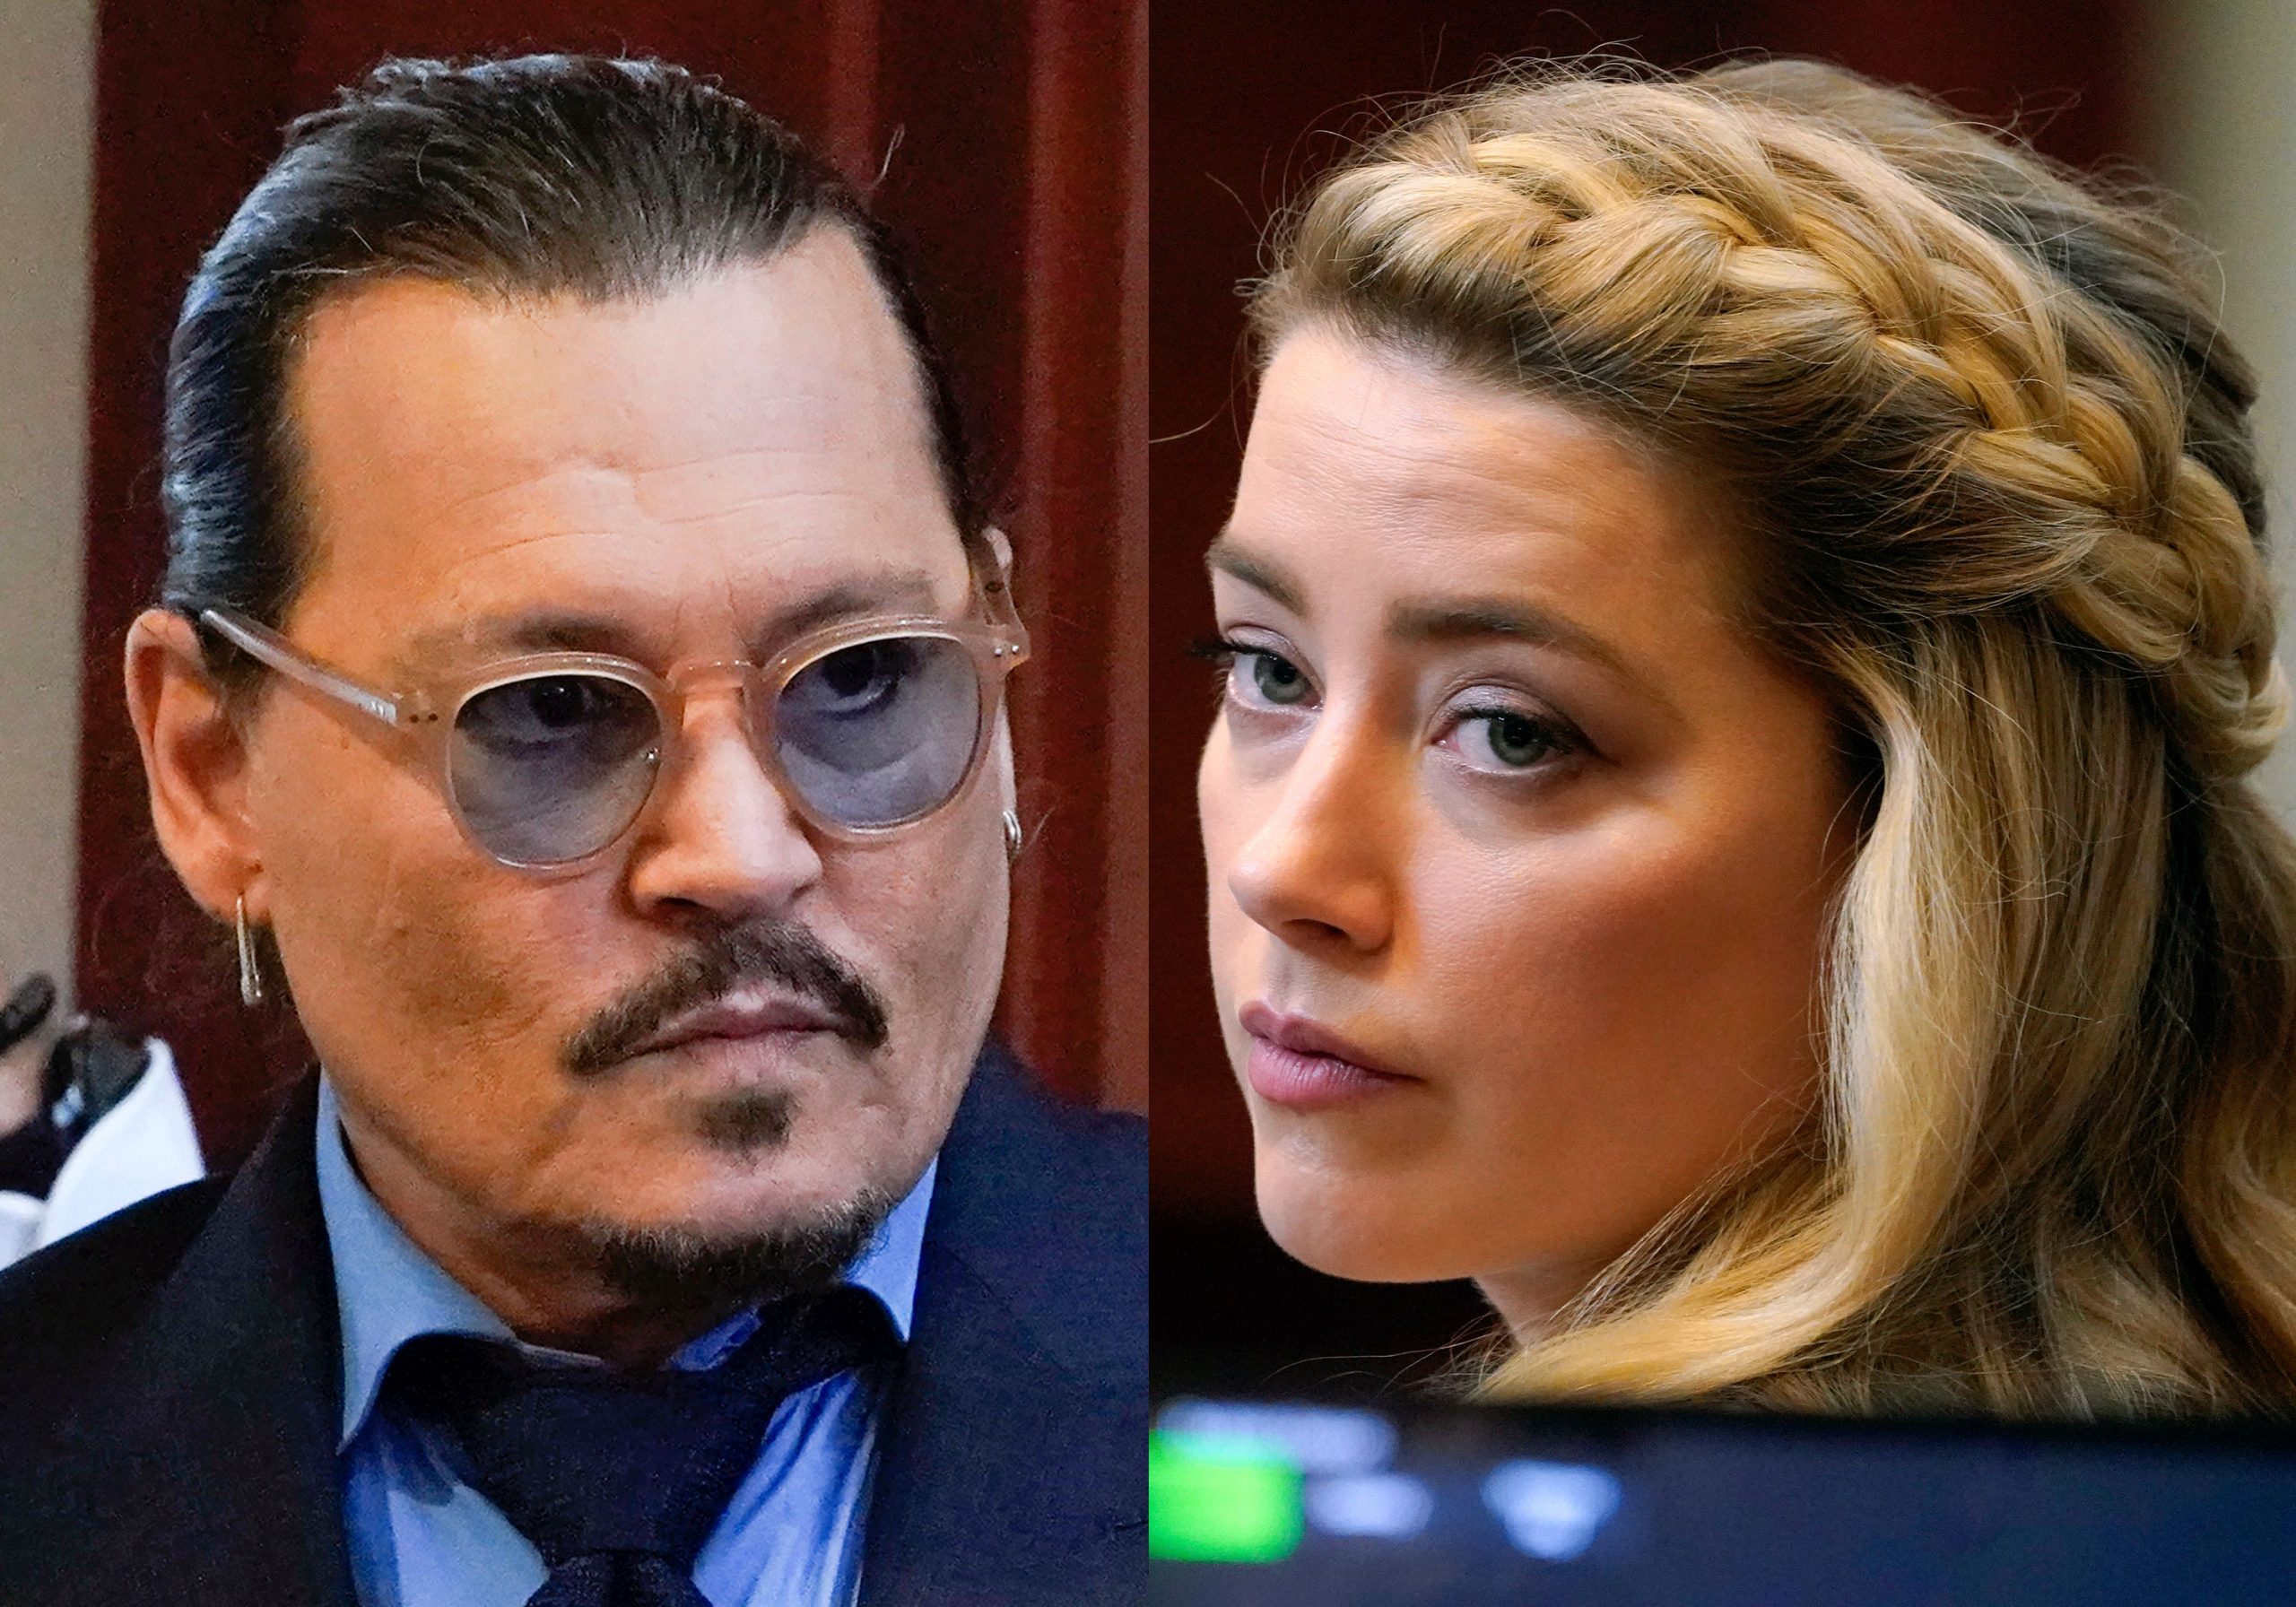 Amber Heard settles defamation case against Jhonny Depp for $1 million